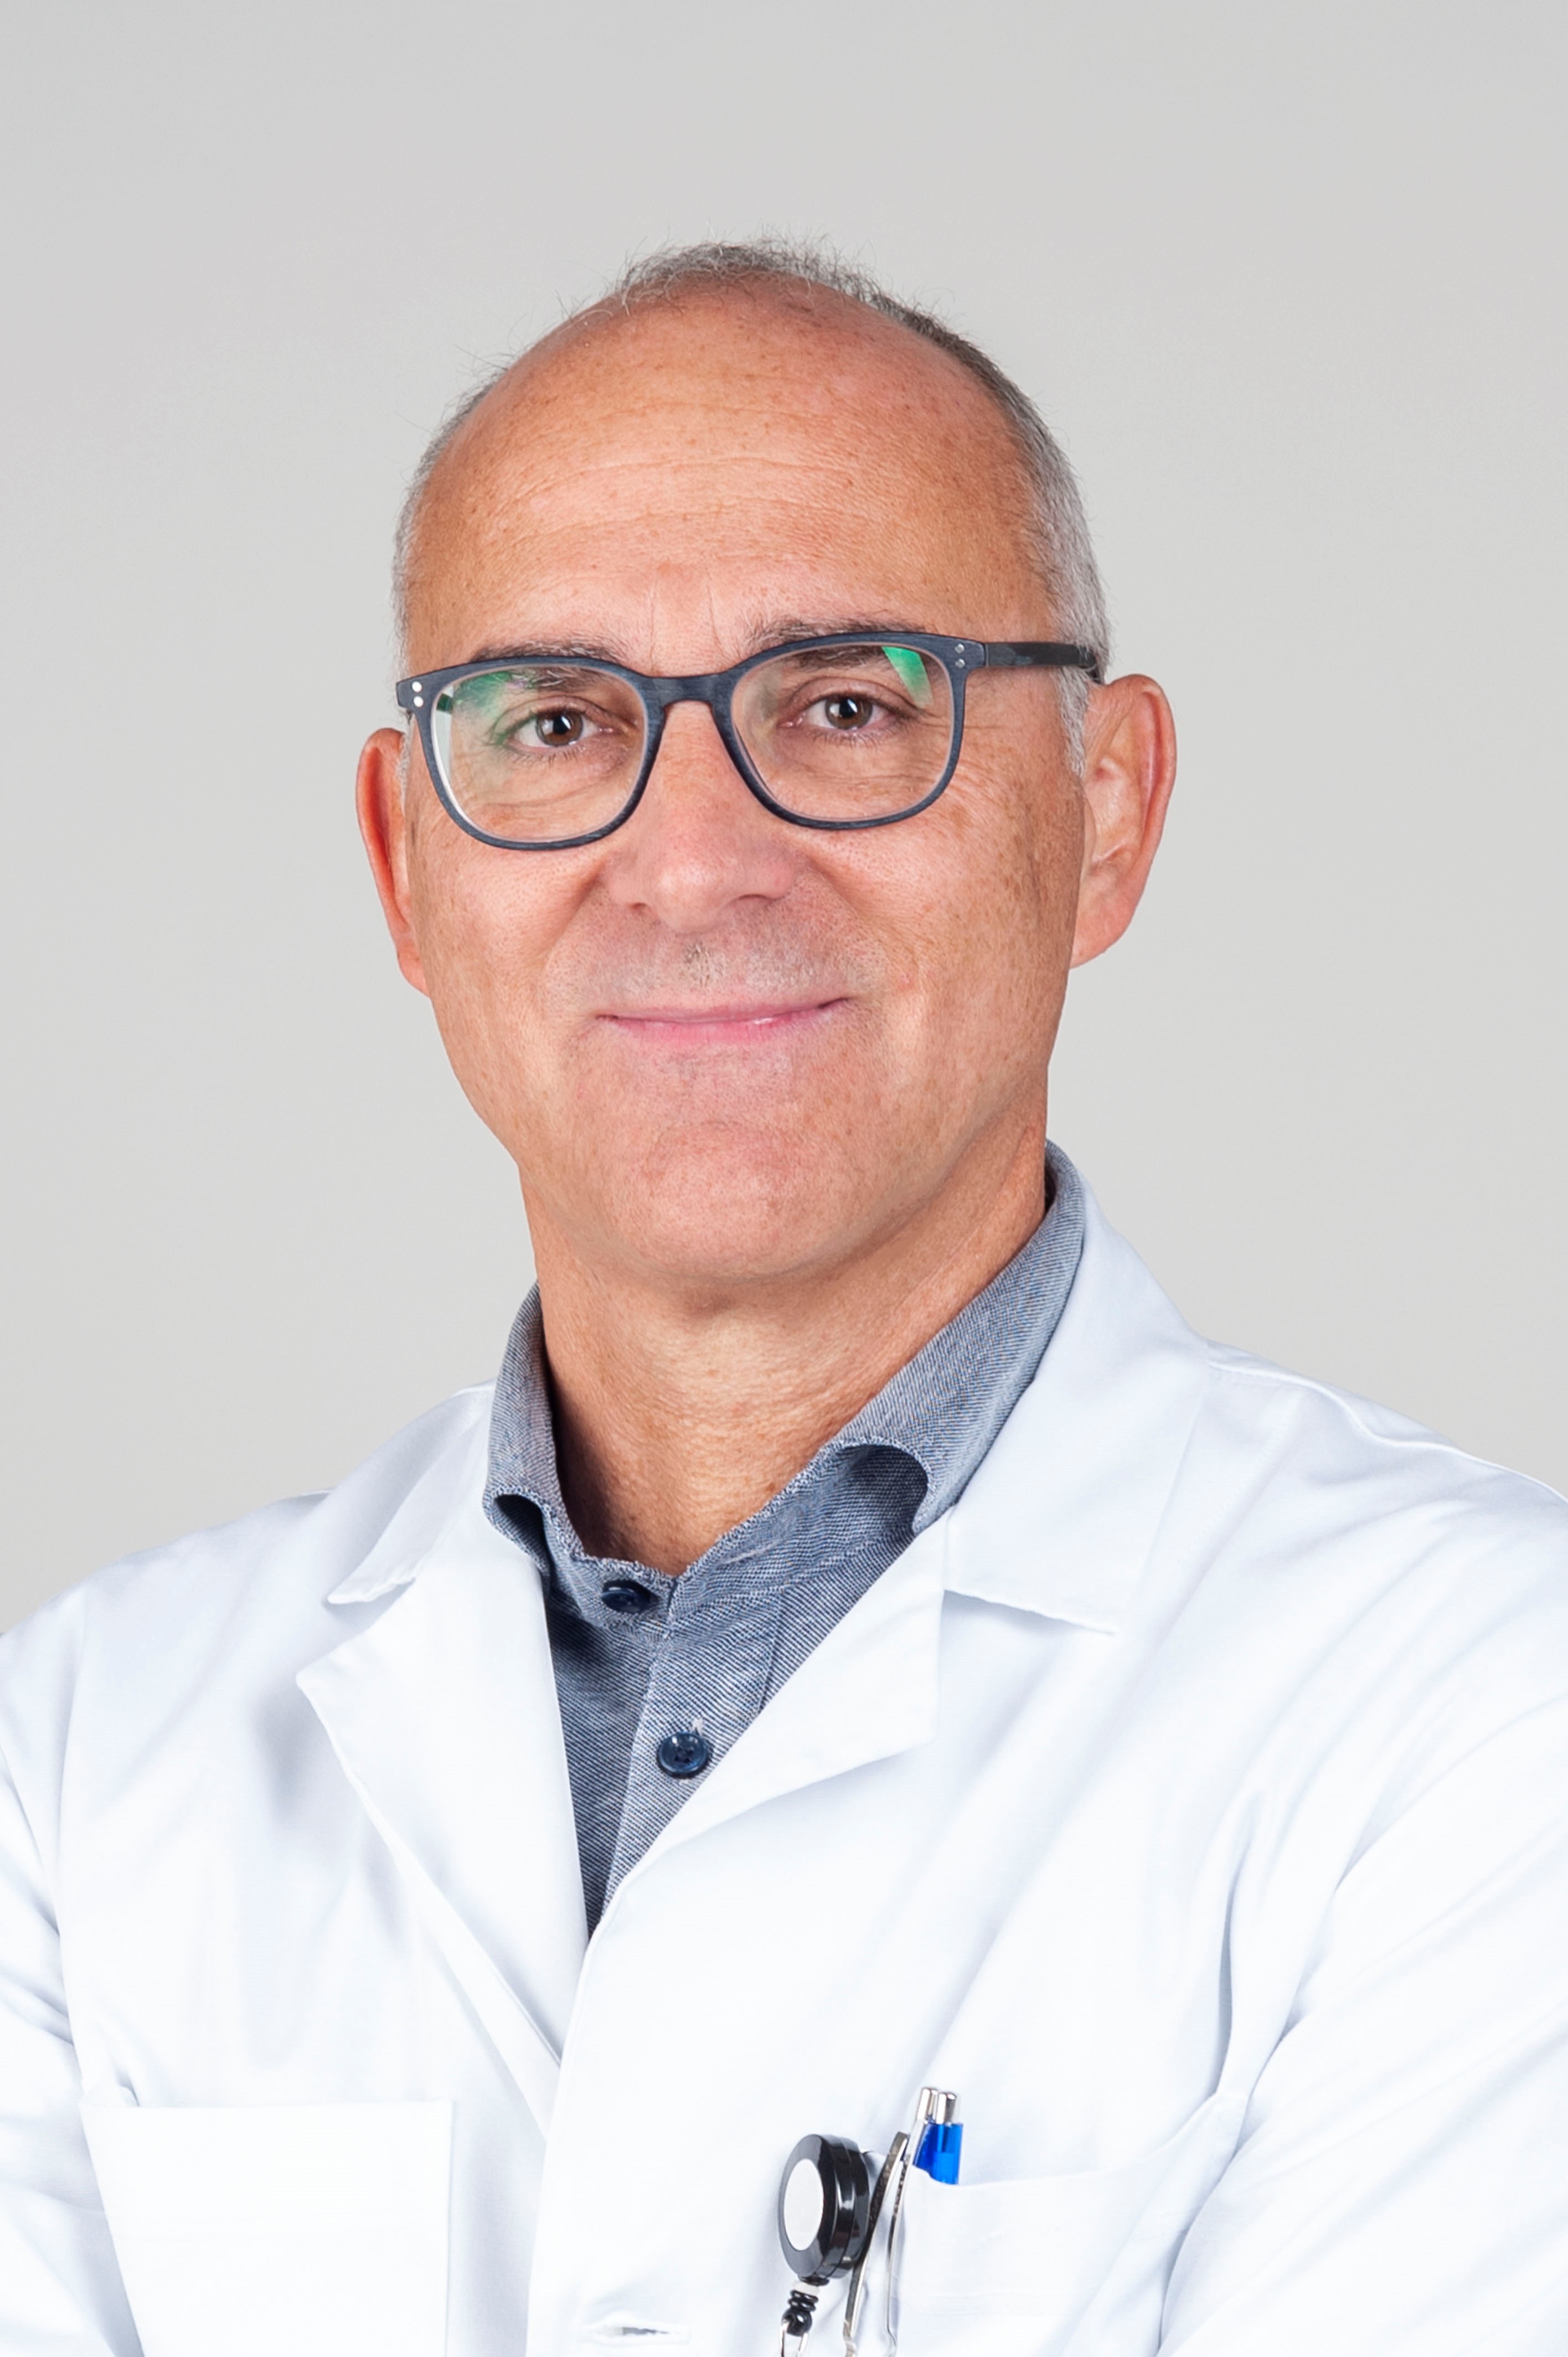 Prof. Alexander Möller (médecin spécialiste en pneumologie pédiatrique, Hôpital pédiatrique, Zurich)